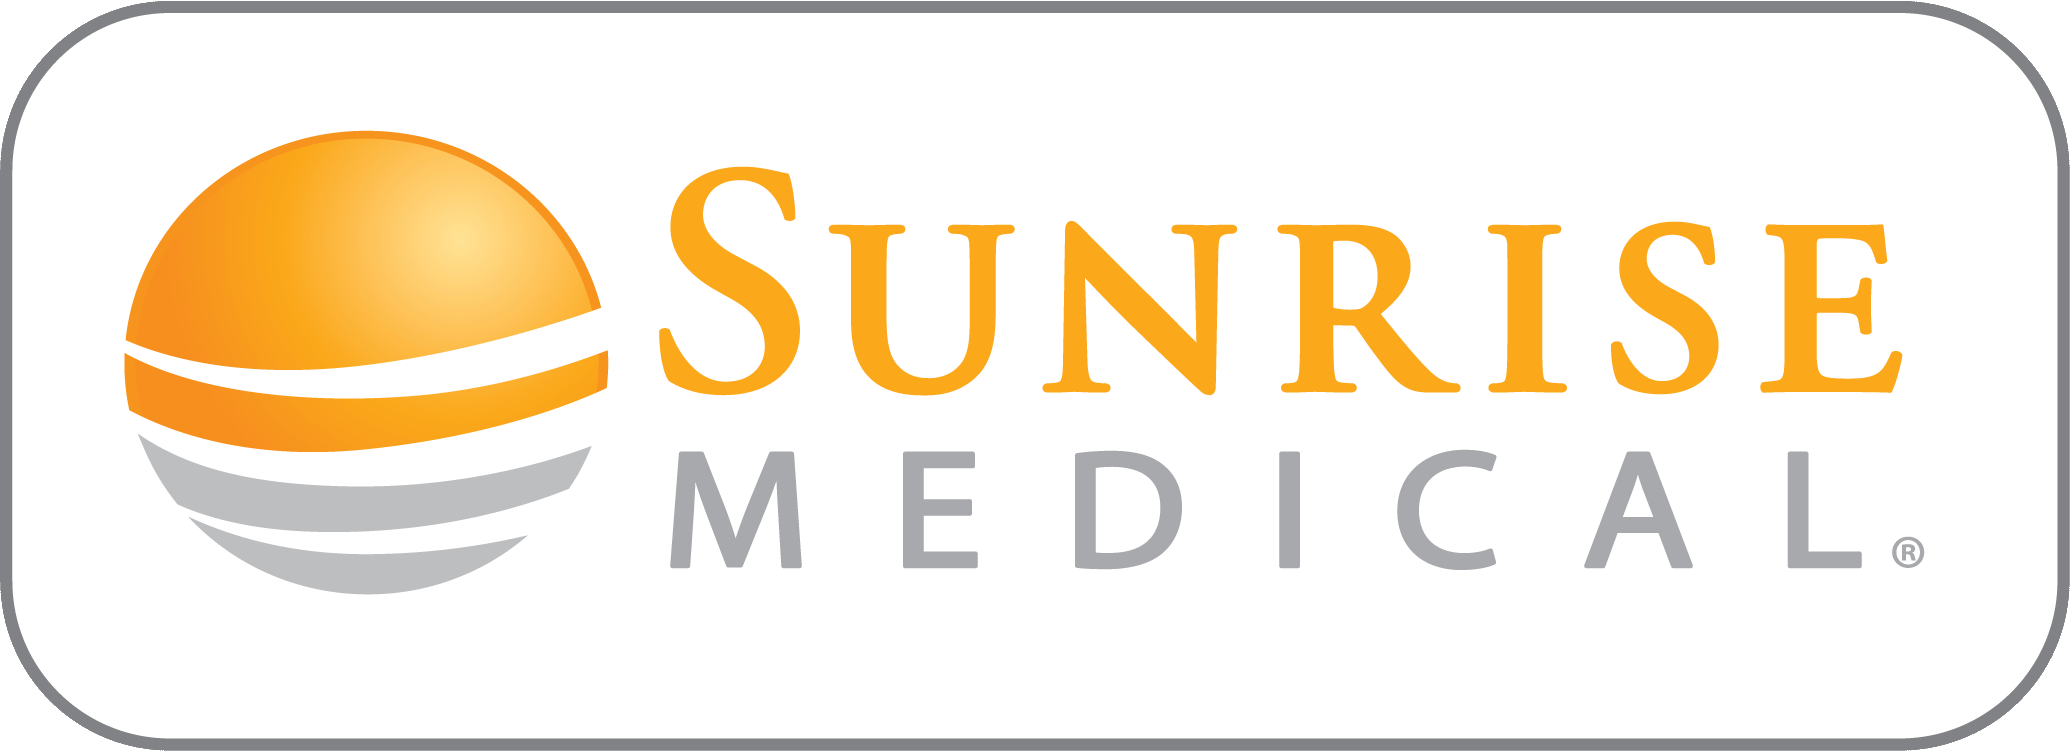 Orange Medical Logo - New Branding - Sunrise Medical